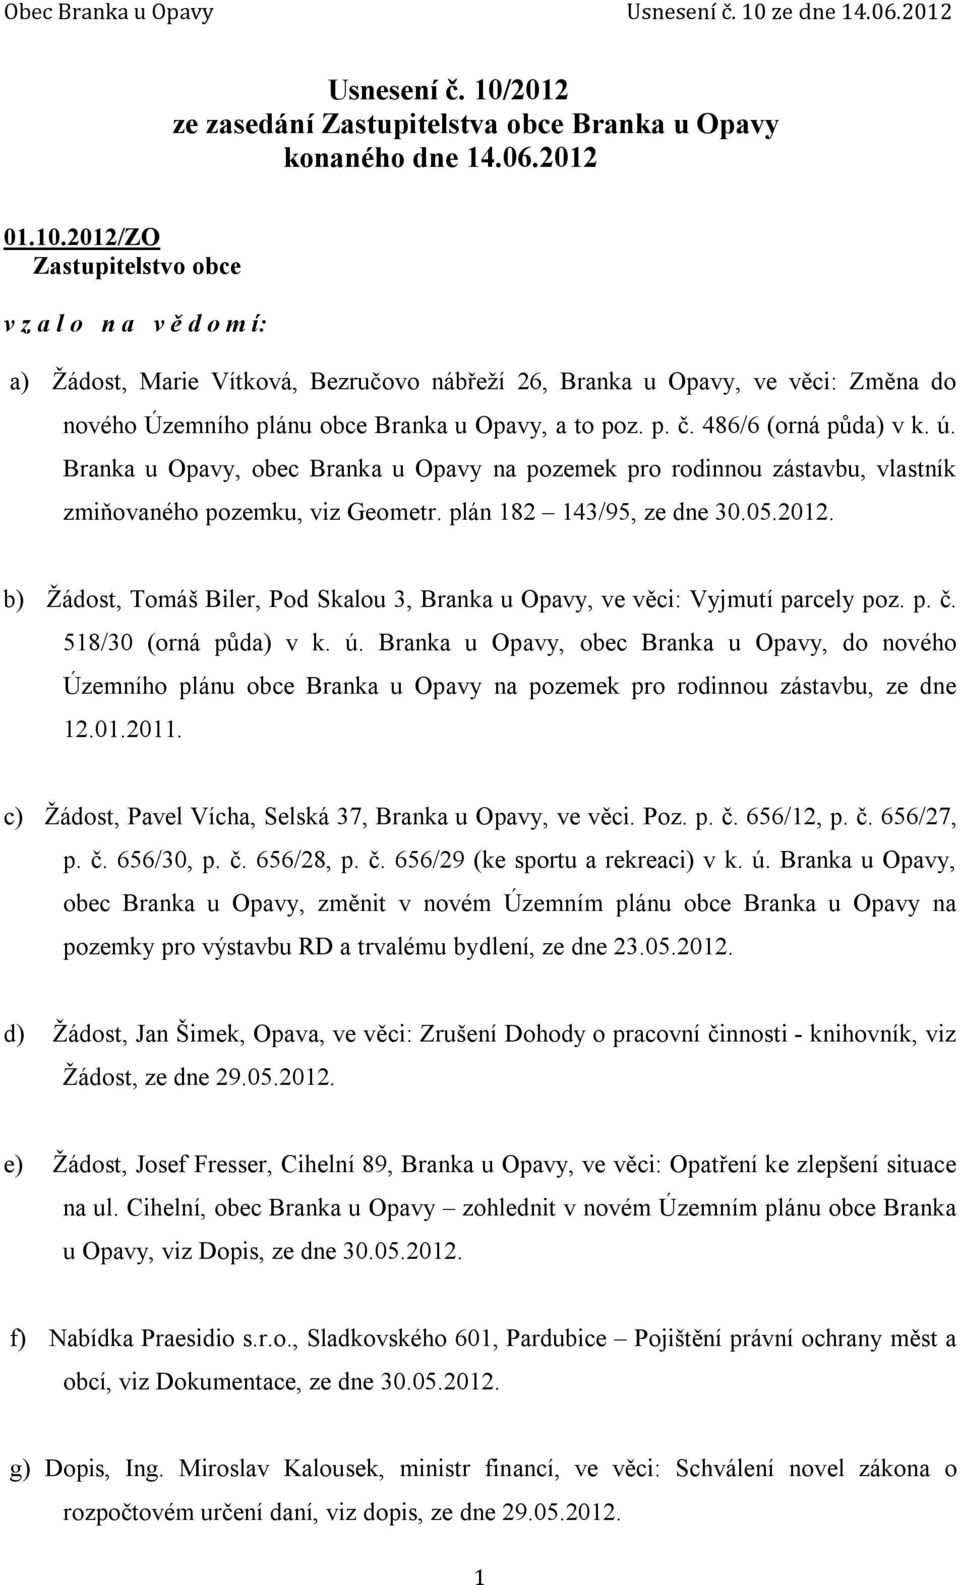 b) Žádost, Tomáš Biler, Pod Skalou 3, Branka u Opavy, ve věci: Vyjmutí parcely poz. p. č. 518/30 (orná půda) v k. ú.